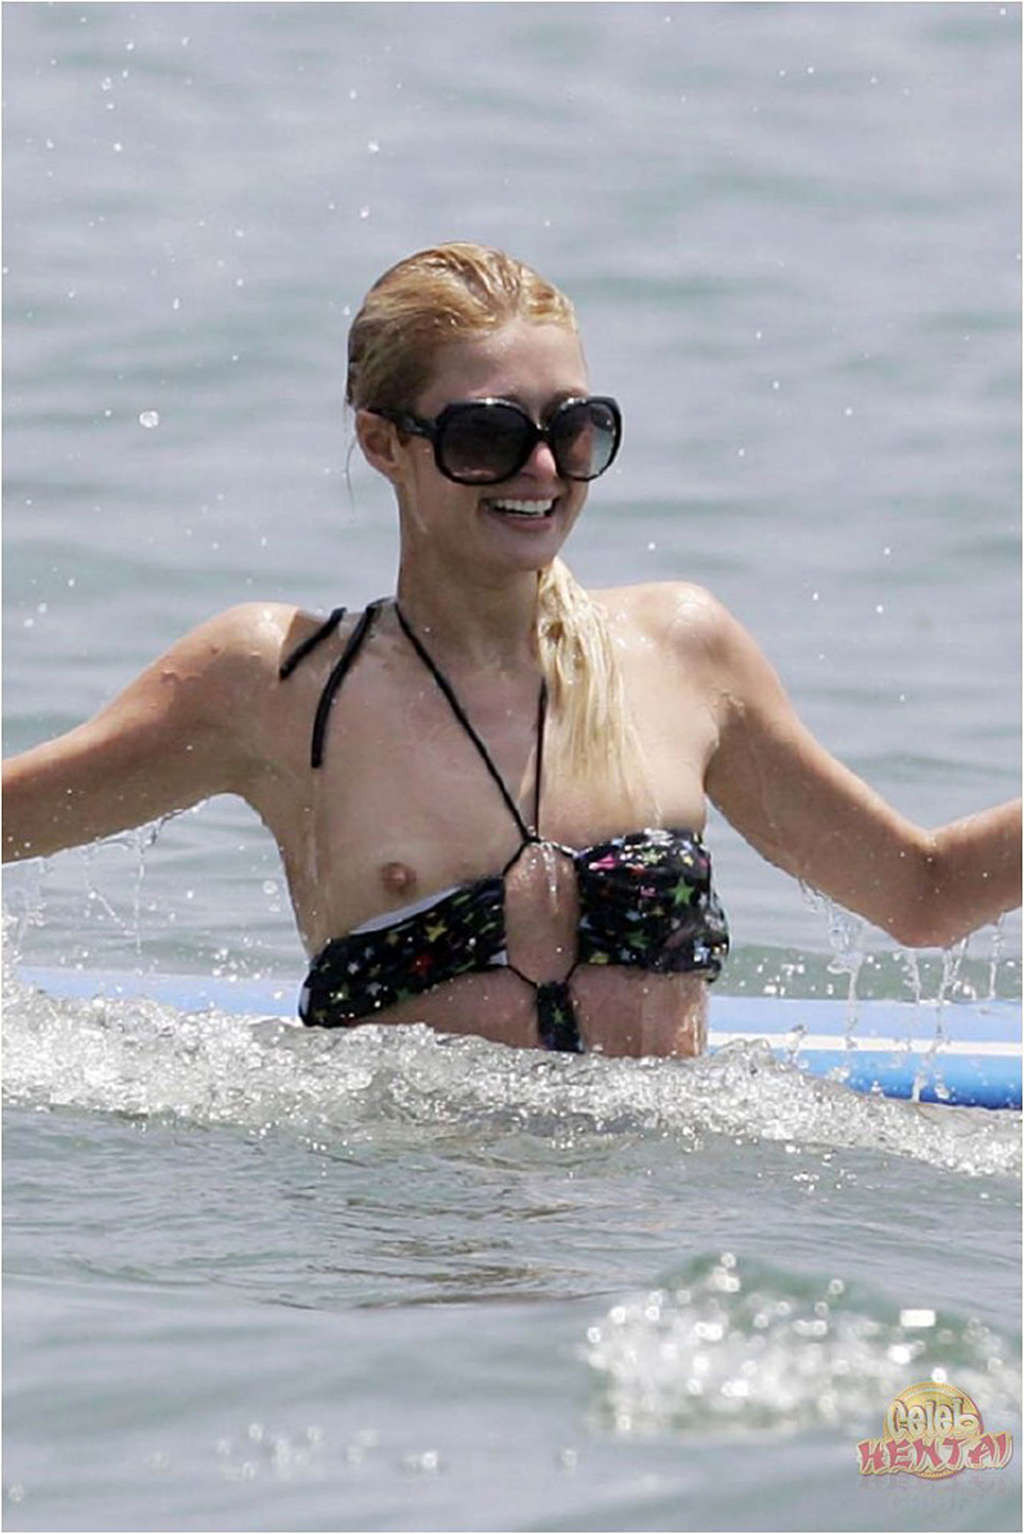 Paris Hilton very sexy and hot upskirt nude and nipple slip photos #75353355